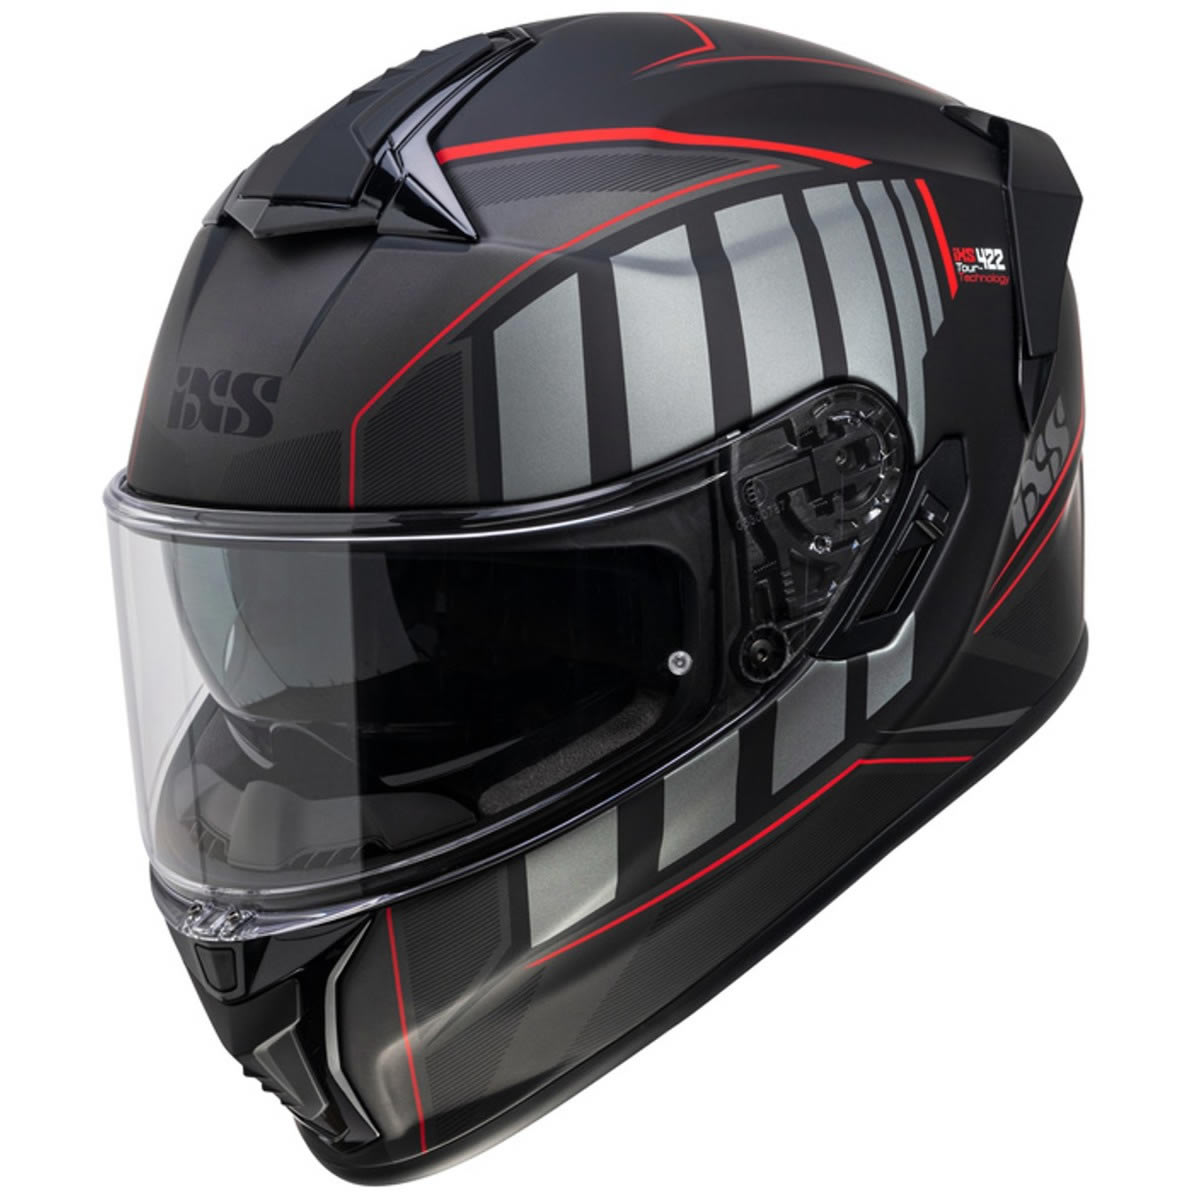 iXS Helm iXS422 FG 2.1, schwarz-rot matt